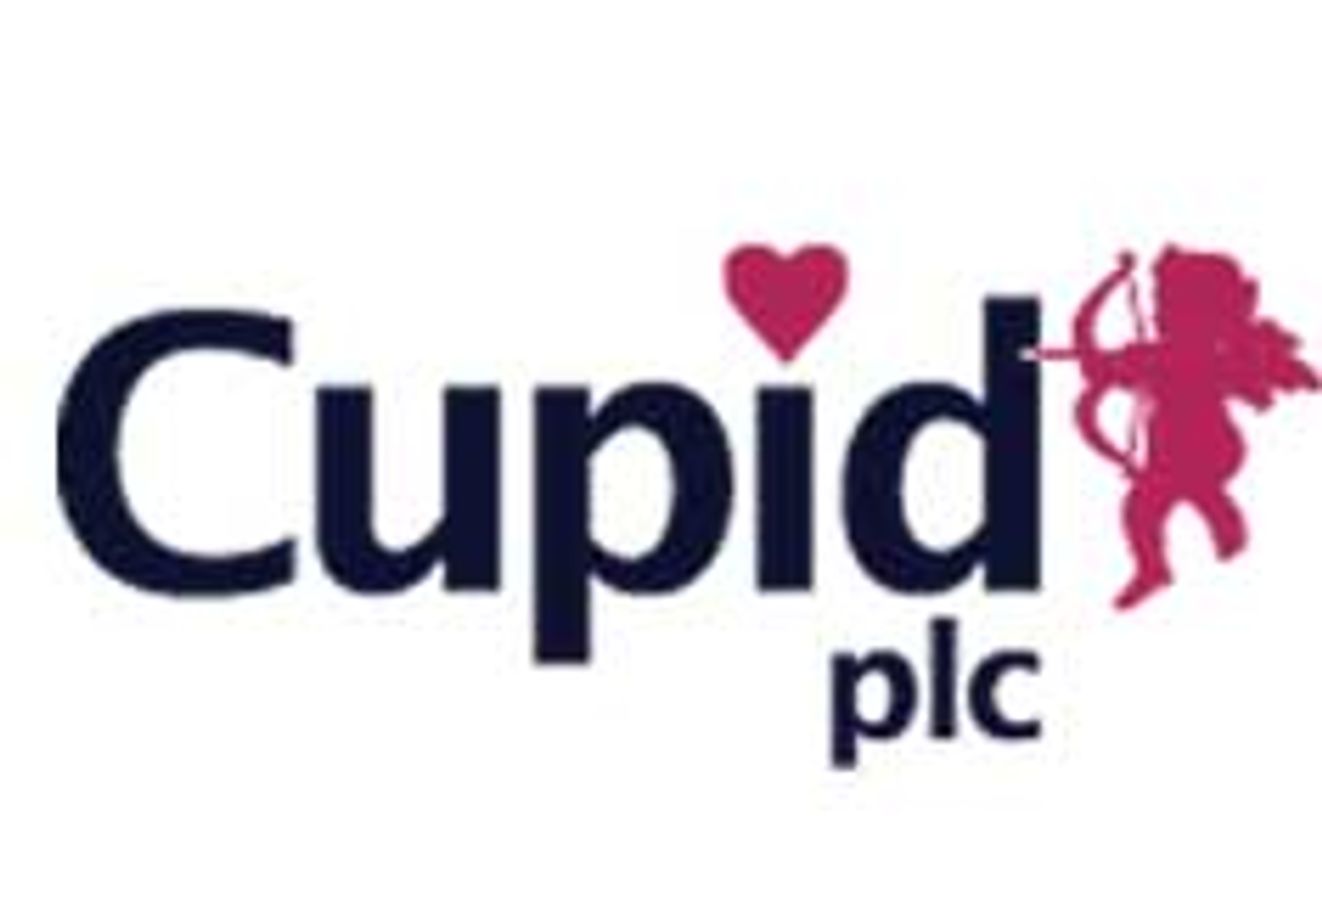 Cupidplc